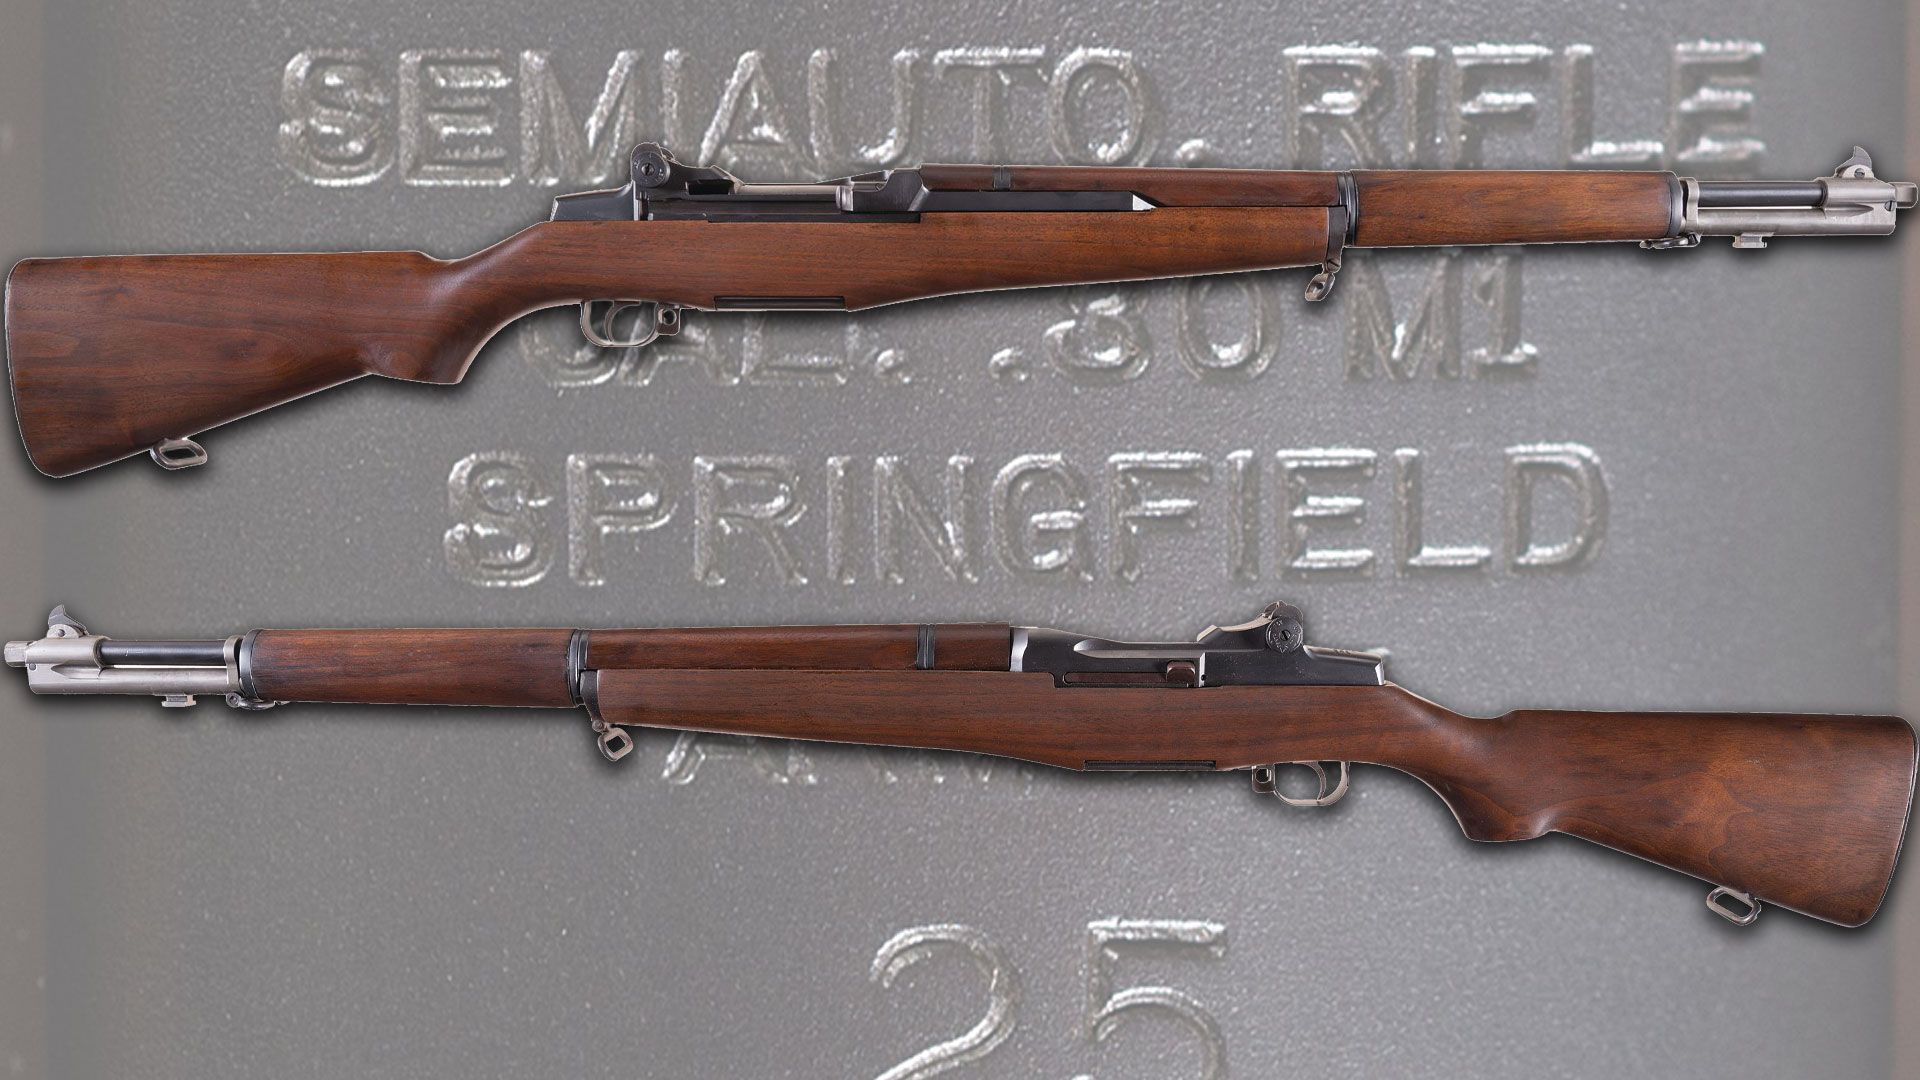 springfield-rifle-sold-at-RIAC-m1-garand